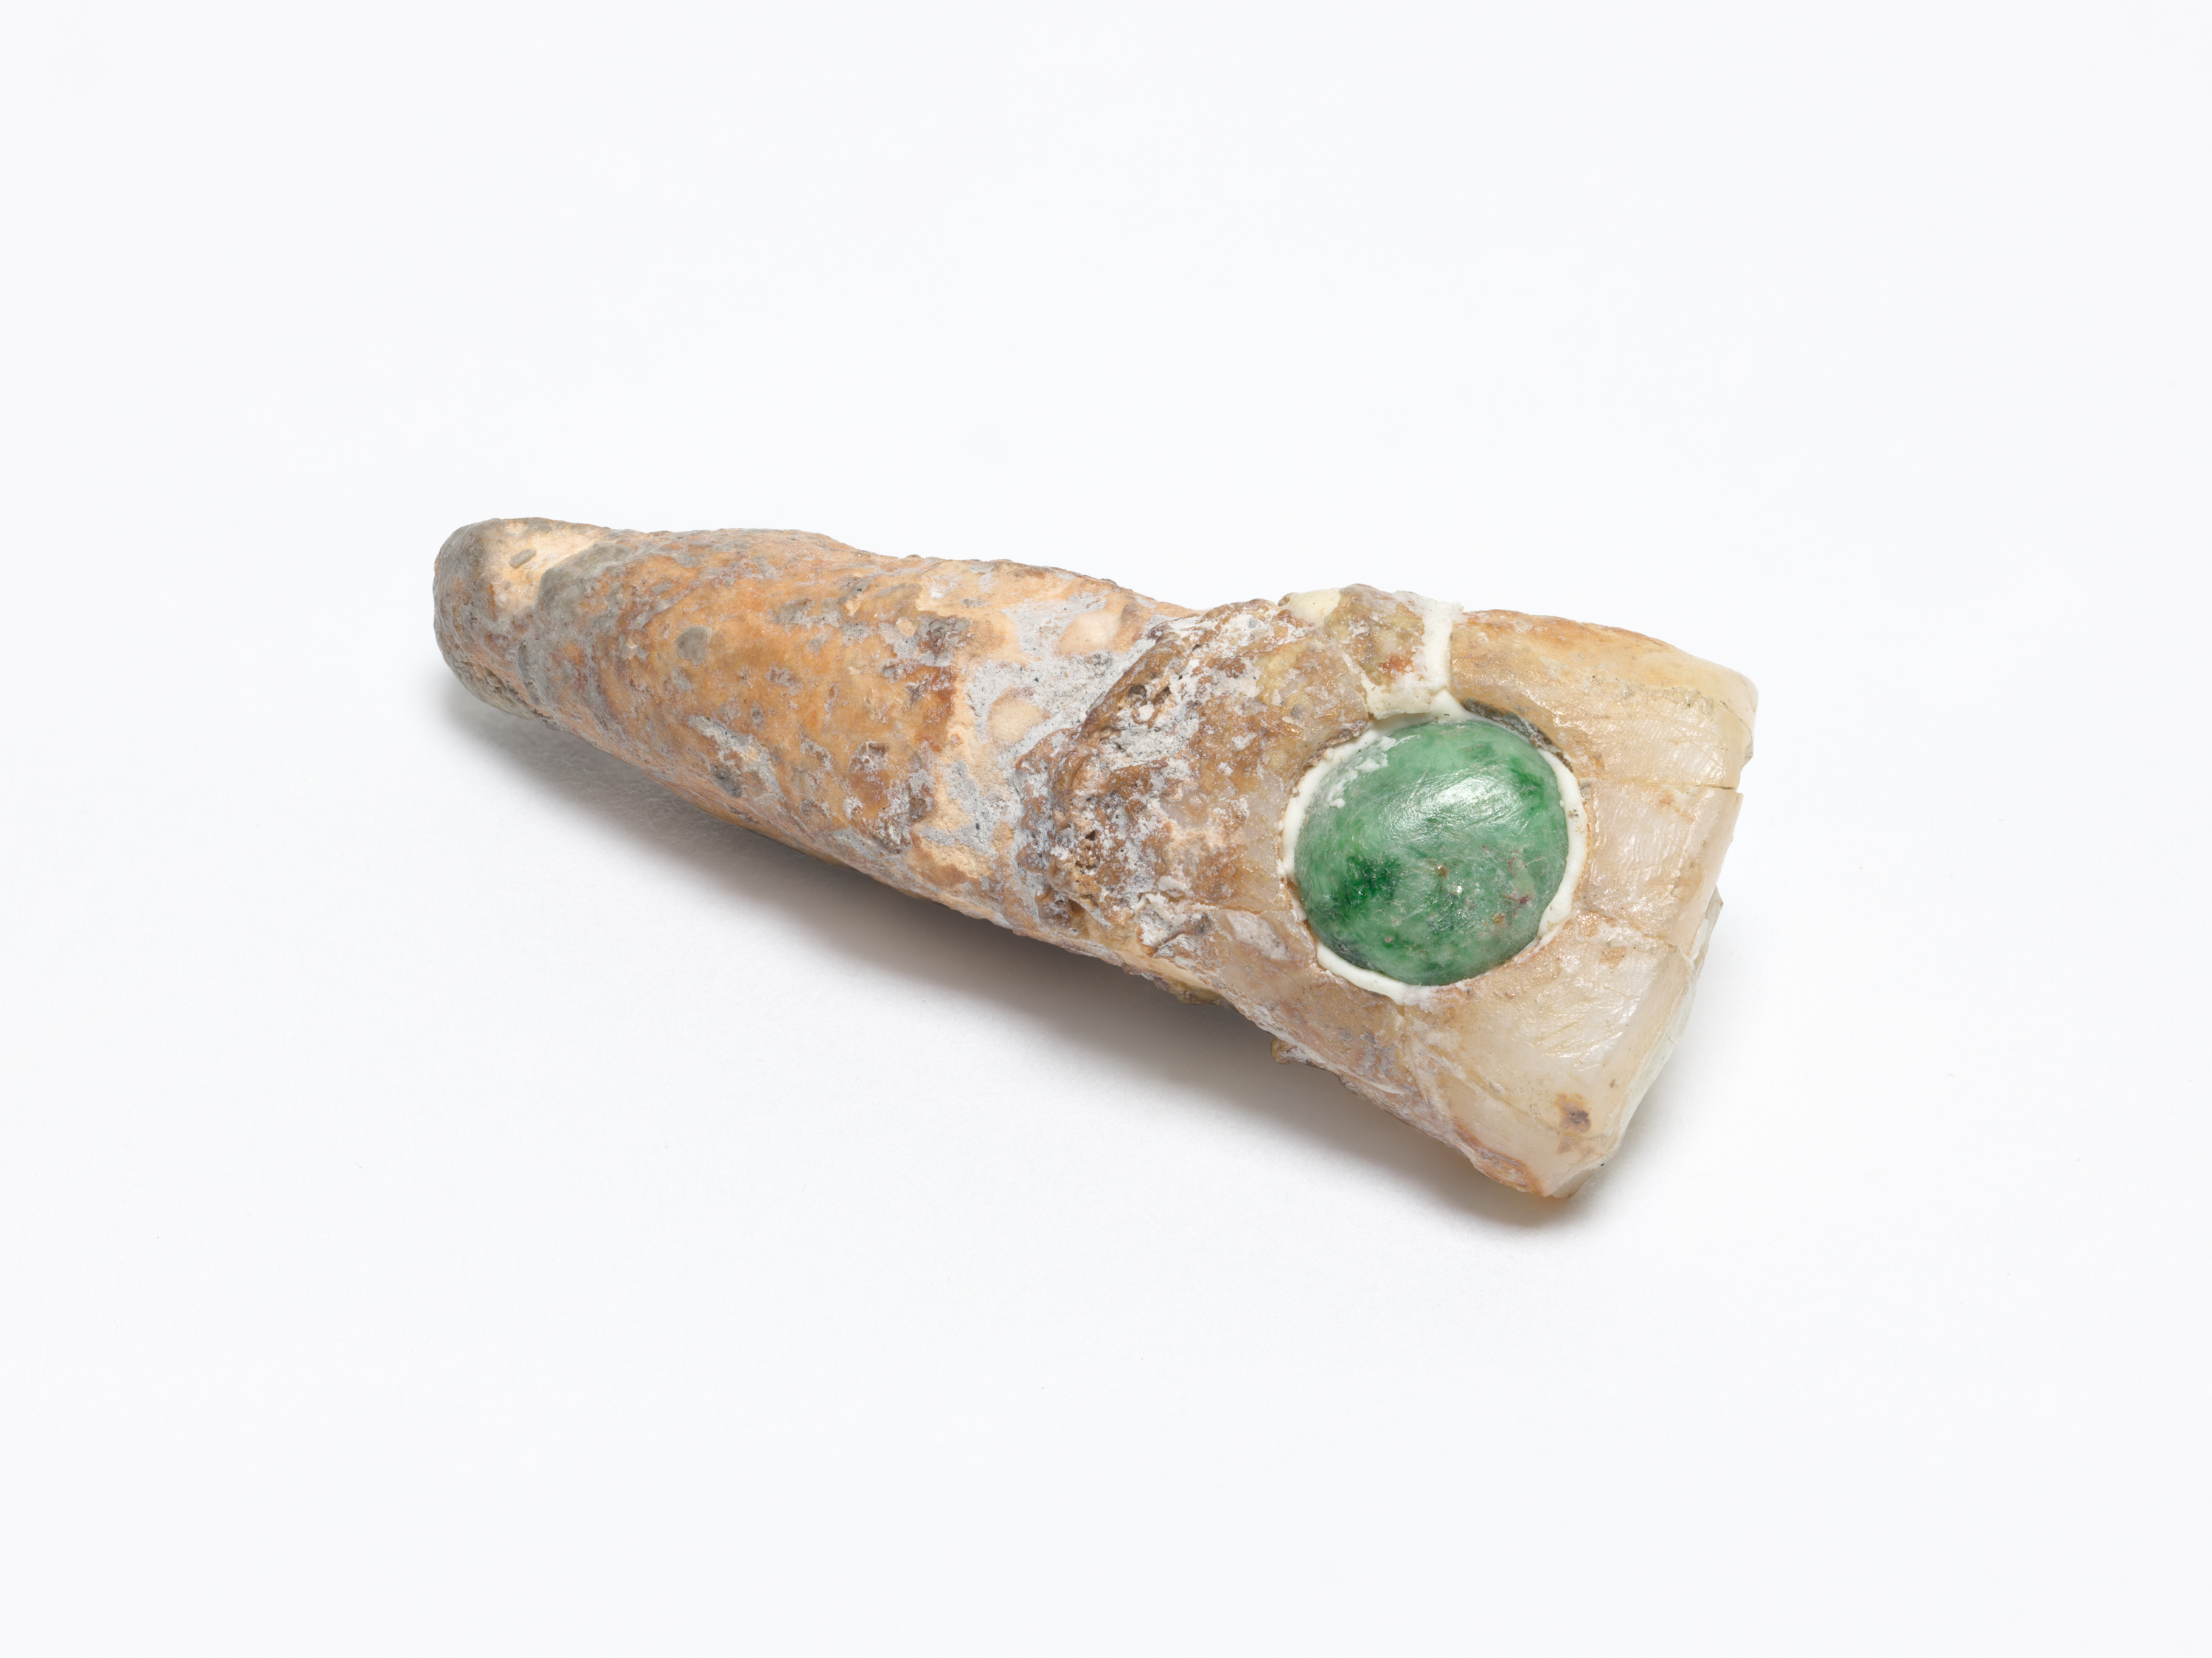 A Mayan human tooth with jade inlay (British Dental Association Museum)